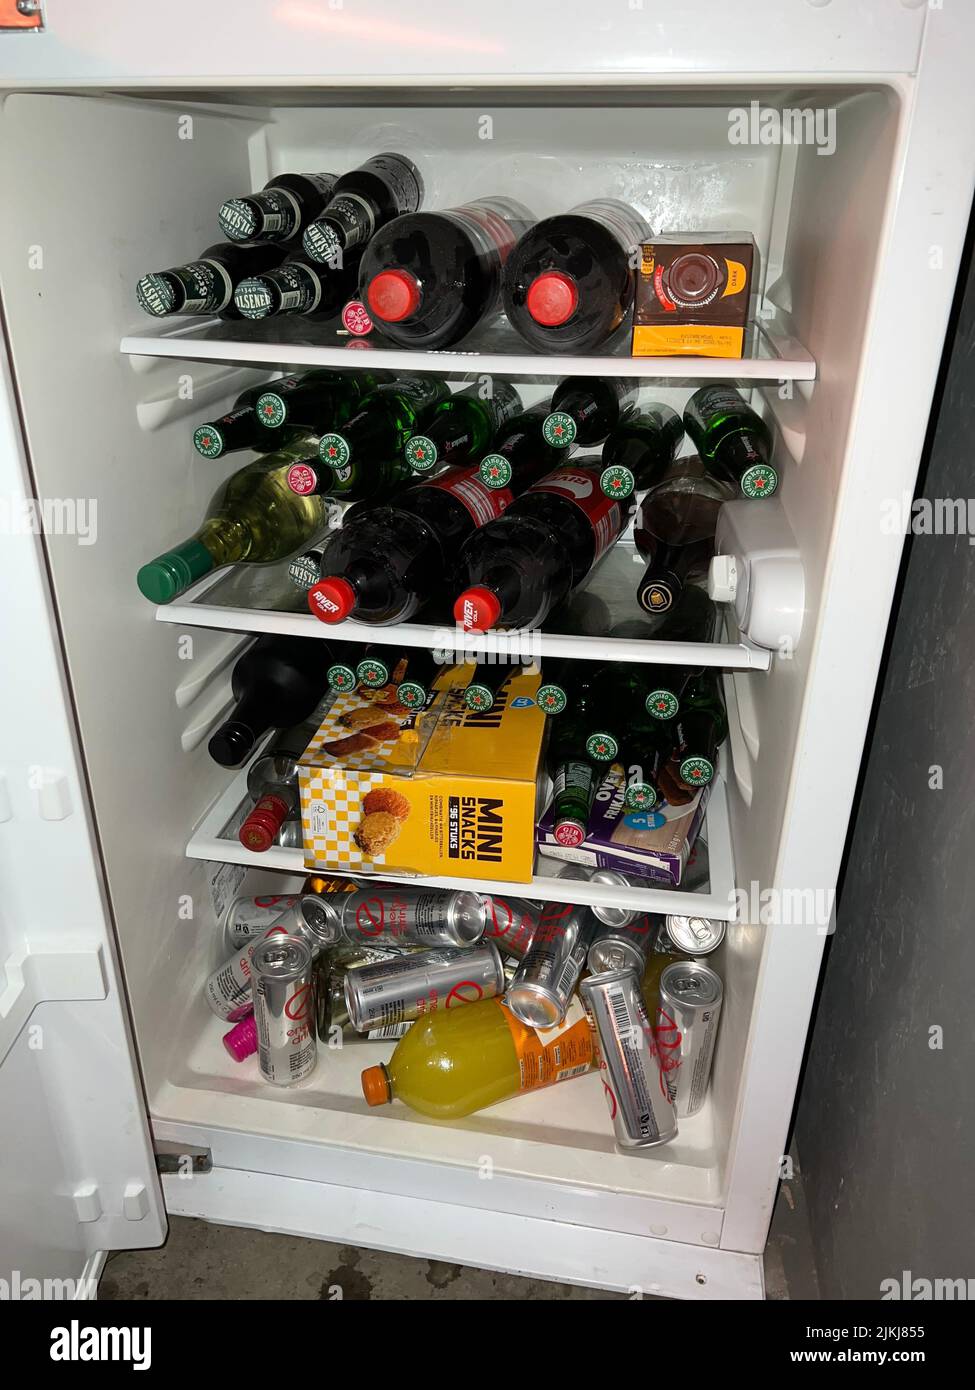 Alcol in frigo immagini e fotografie stock ad alta risoluzione - Alamy